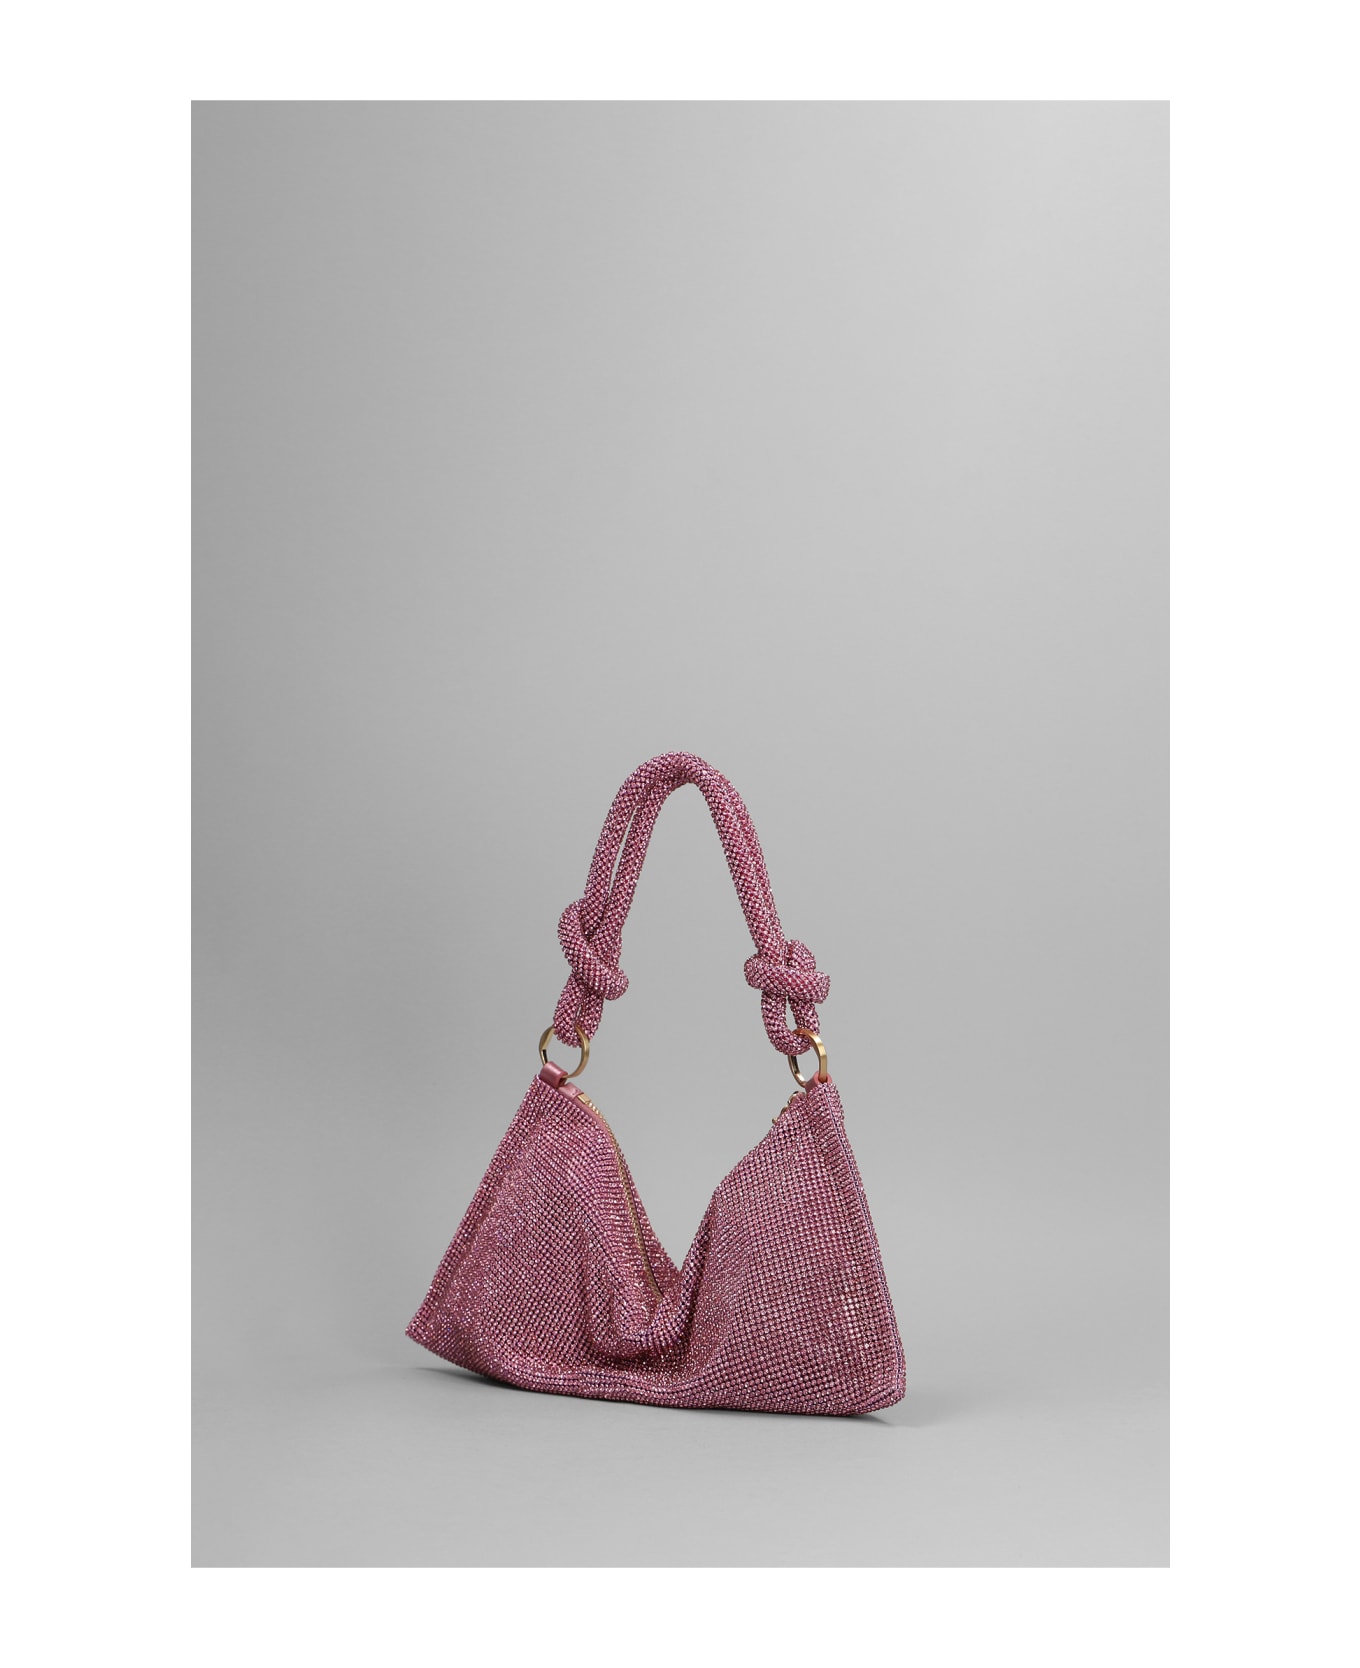 Cult Gaia Hera Nano Shoulder  Hand Bag In Rose-pink Metal Alloy - rose-pink